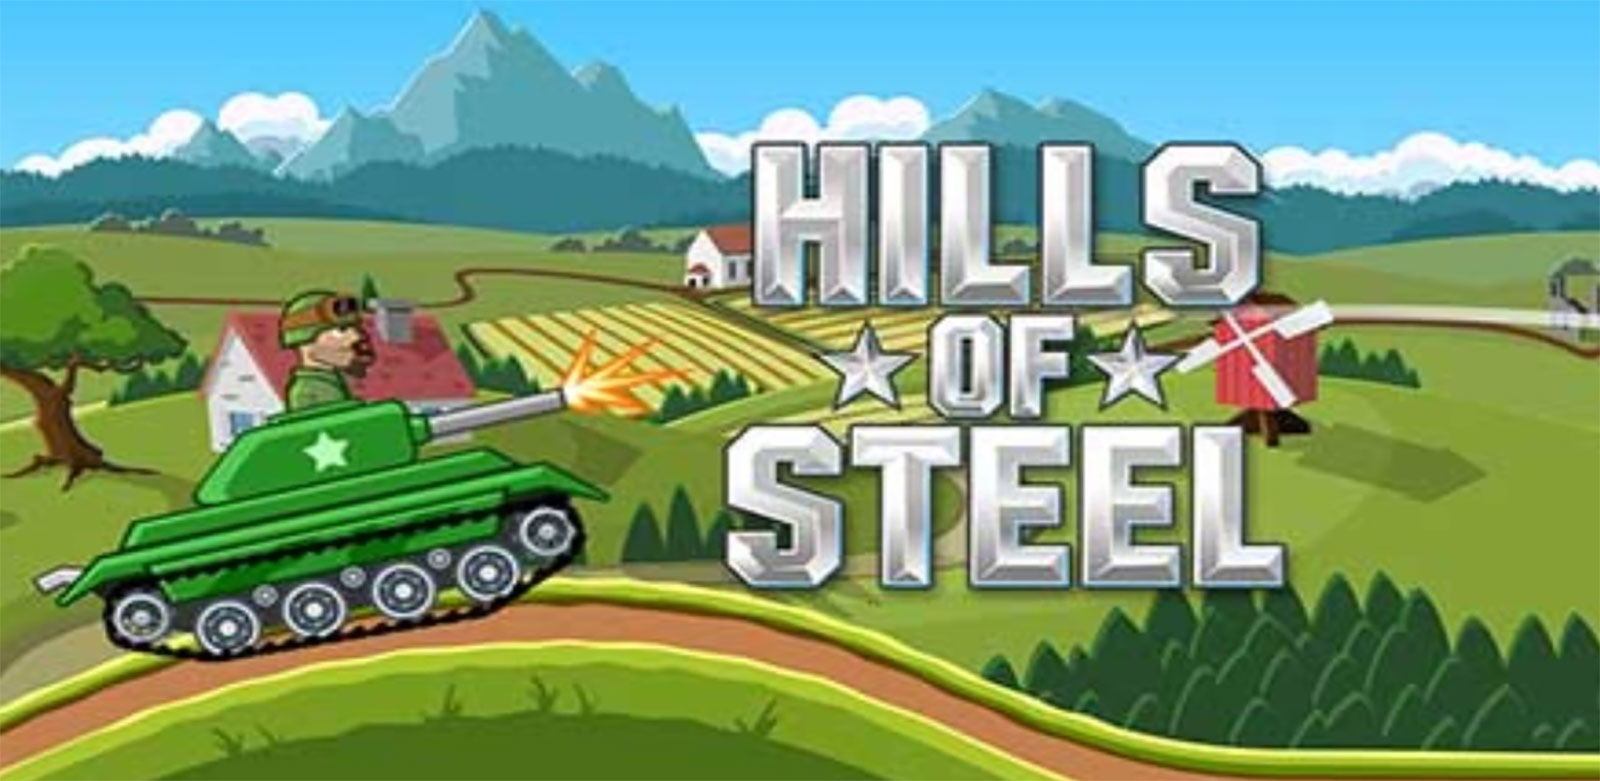 Игра холм. Игра Hills of Steel танки 2. Танк Hills of Steel. Hills of Steel танки. Игра Хилл оф стил танки.